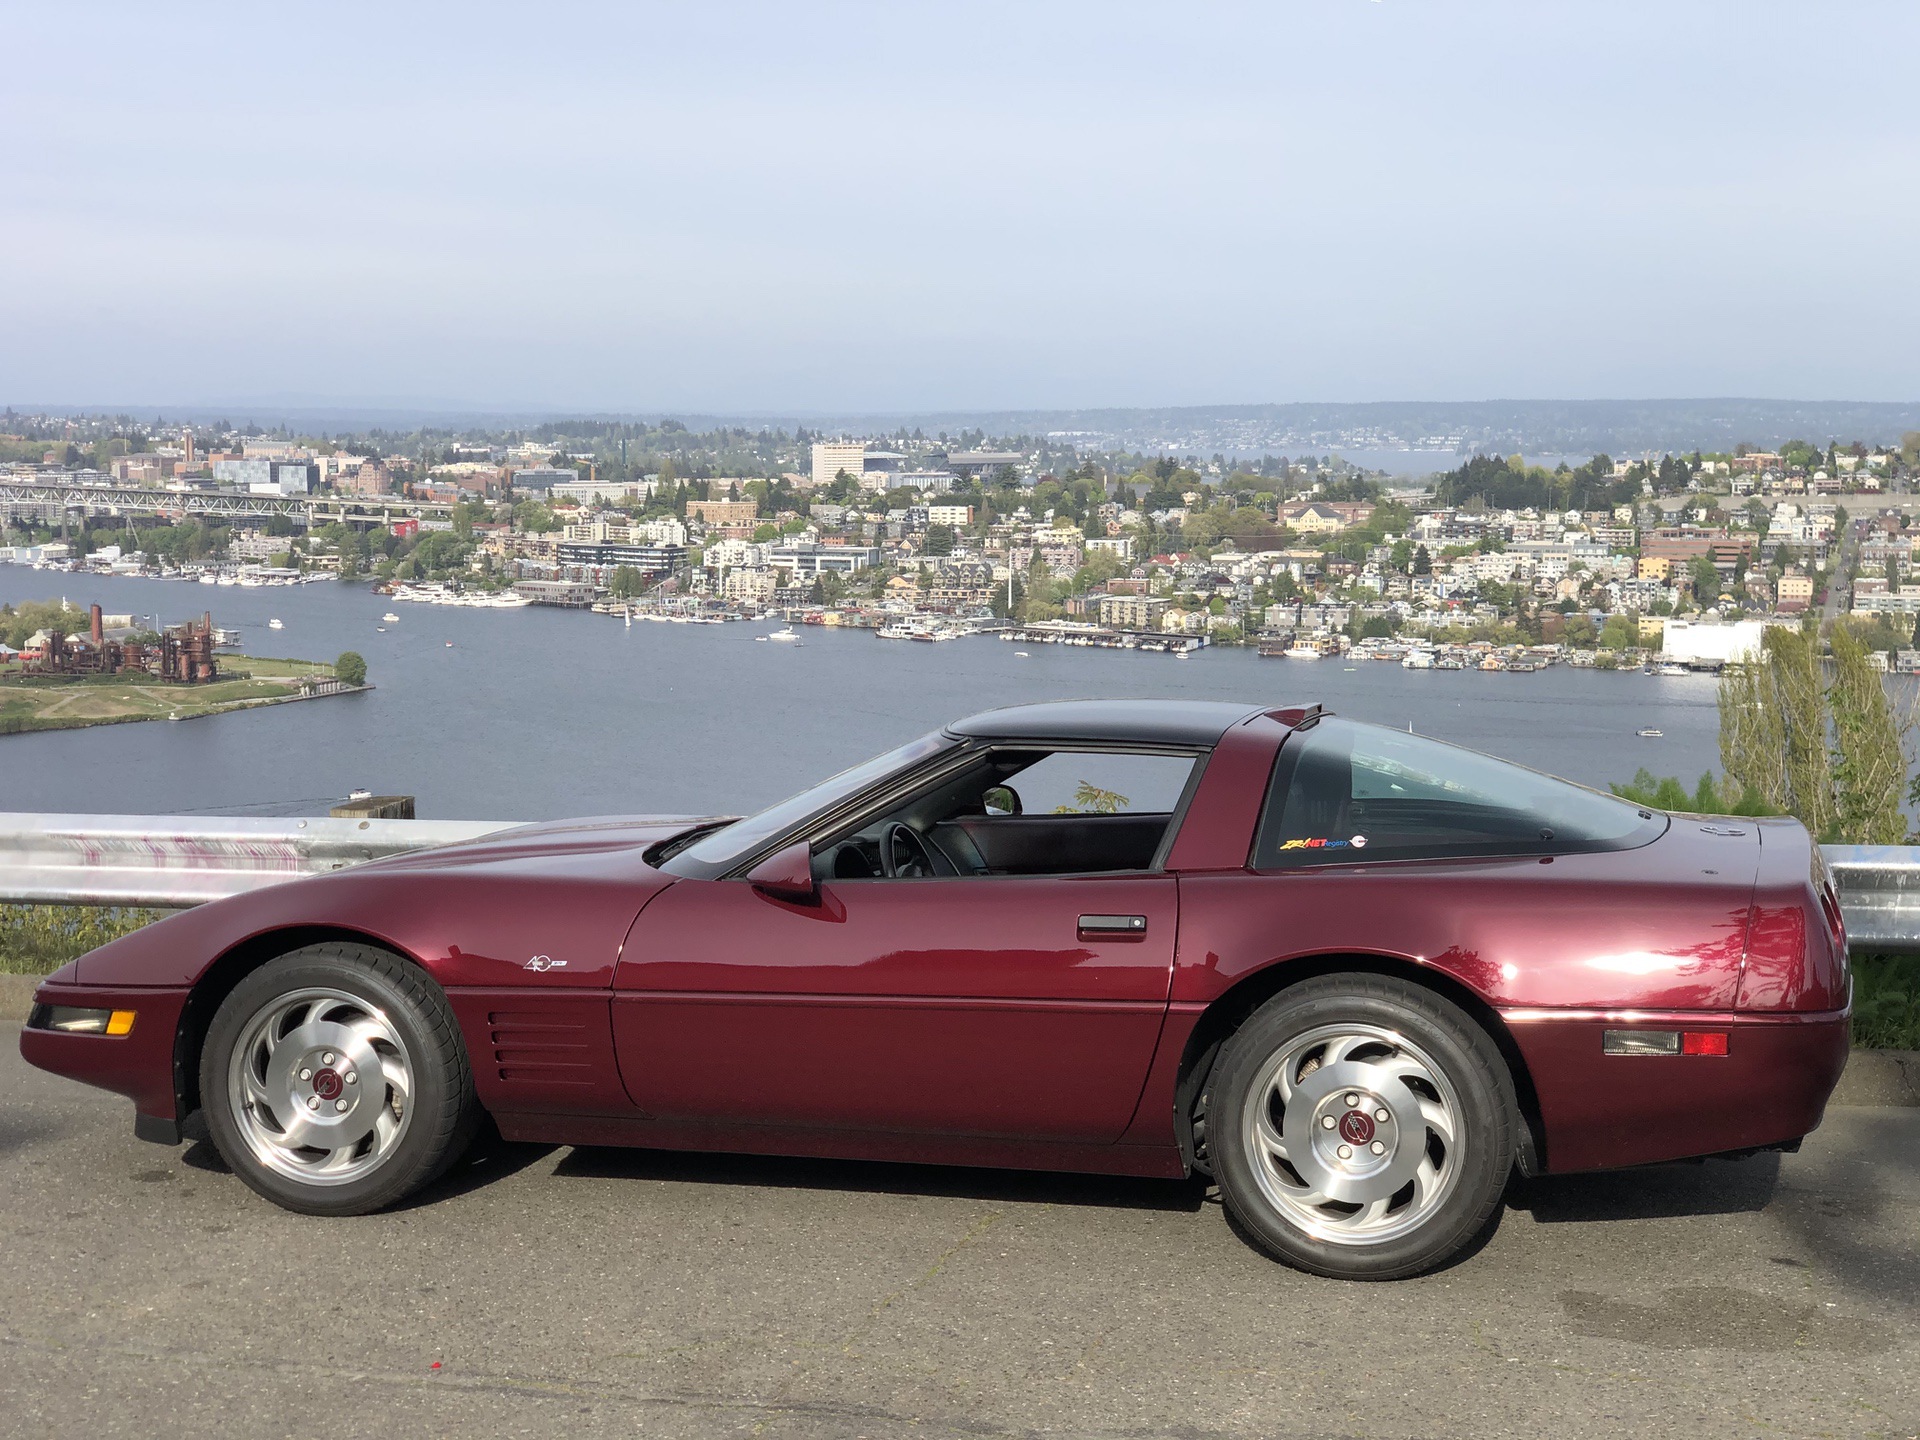 1993 Corvette C4 ZR-1 40th Anniversary Edition parked near river